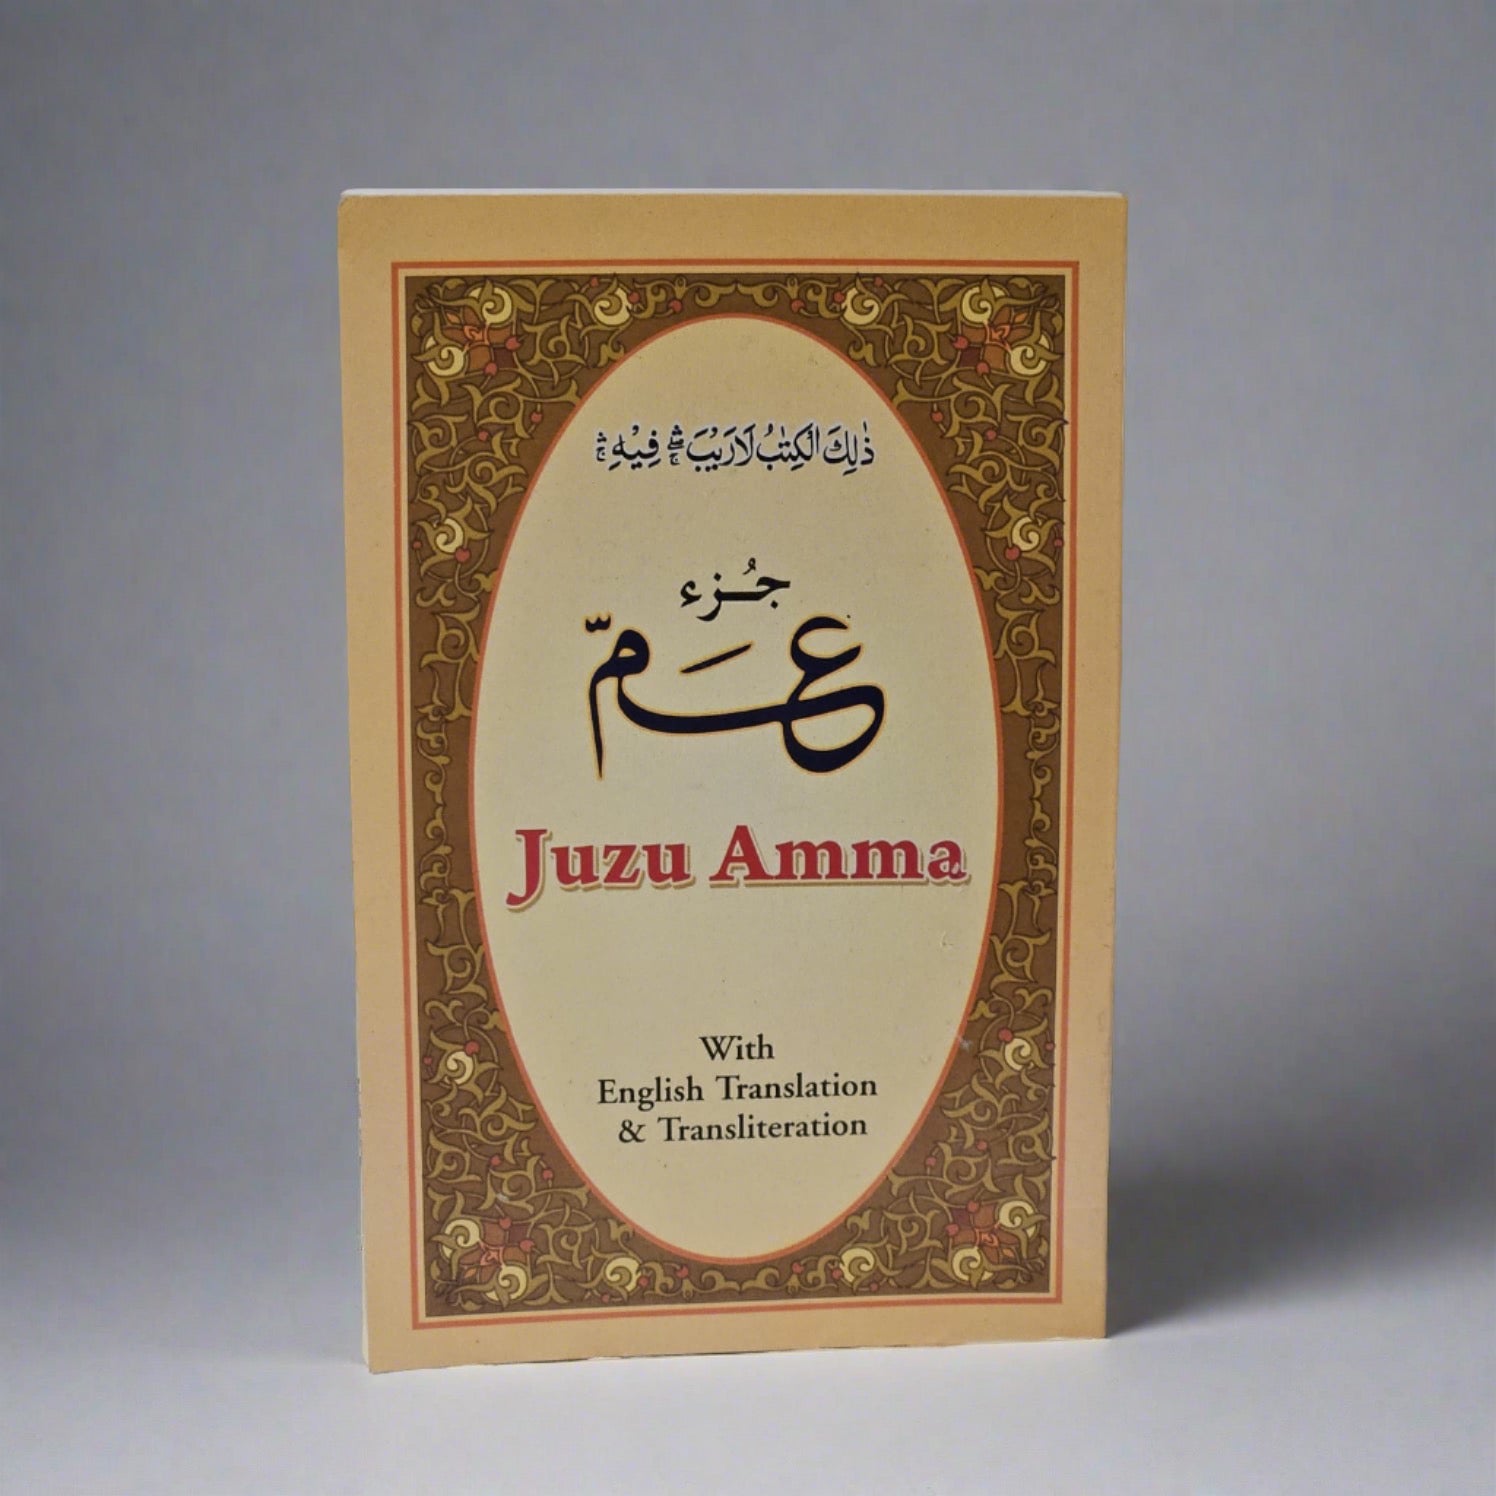 Juzu Amma met Engelse vertaling en transliterasie